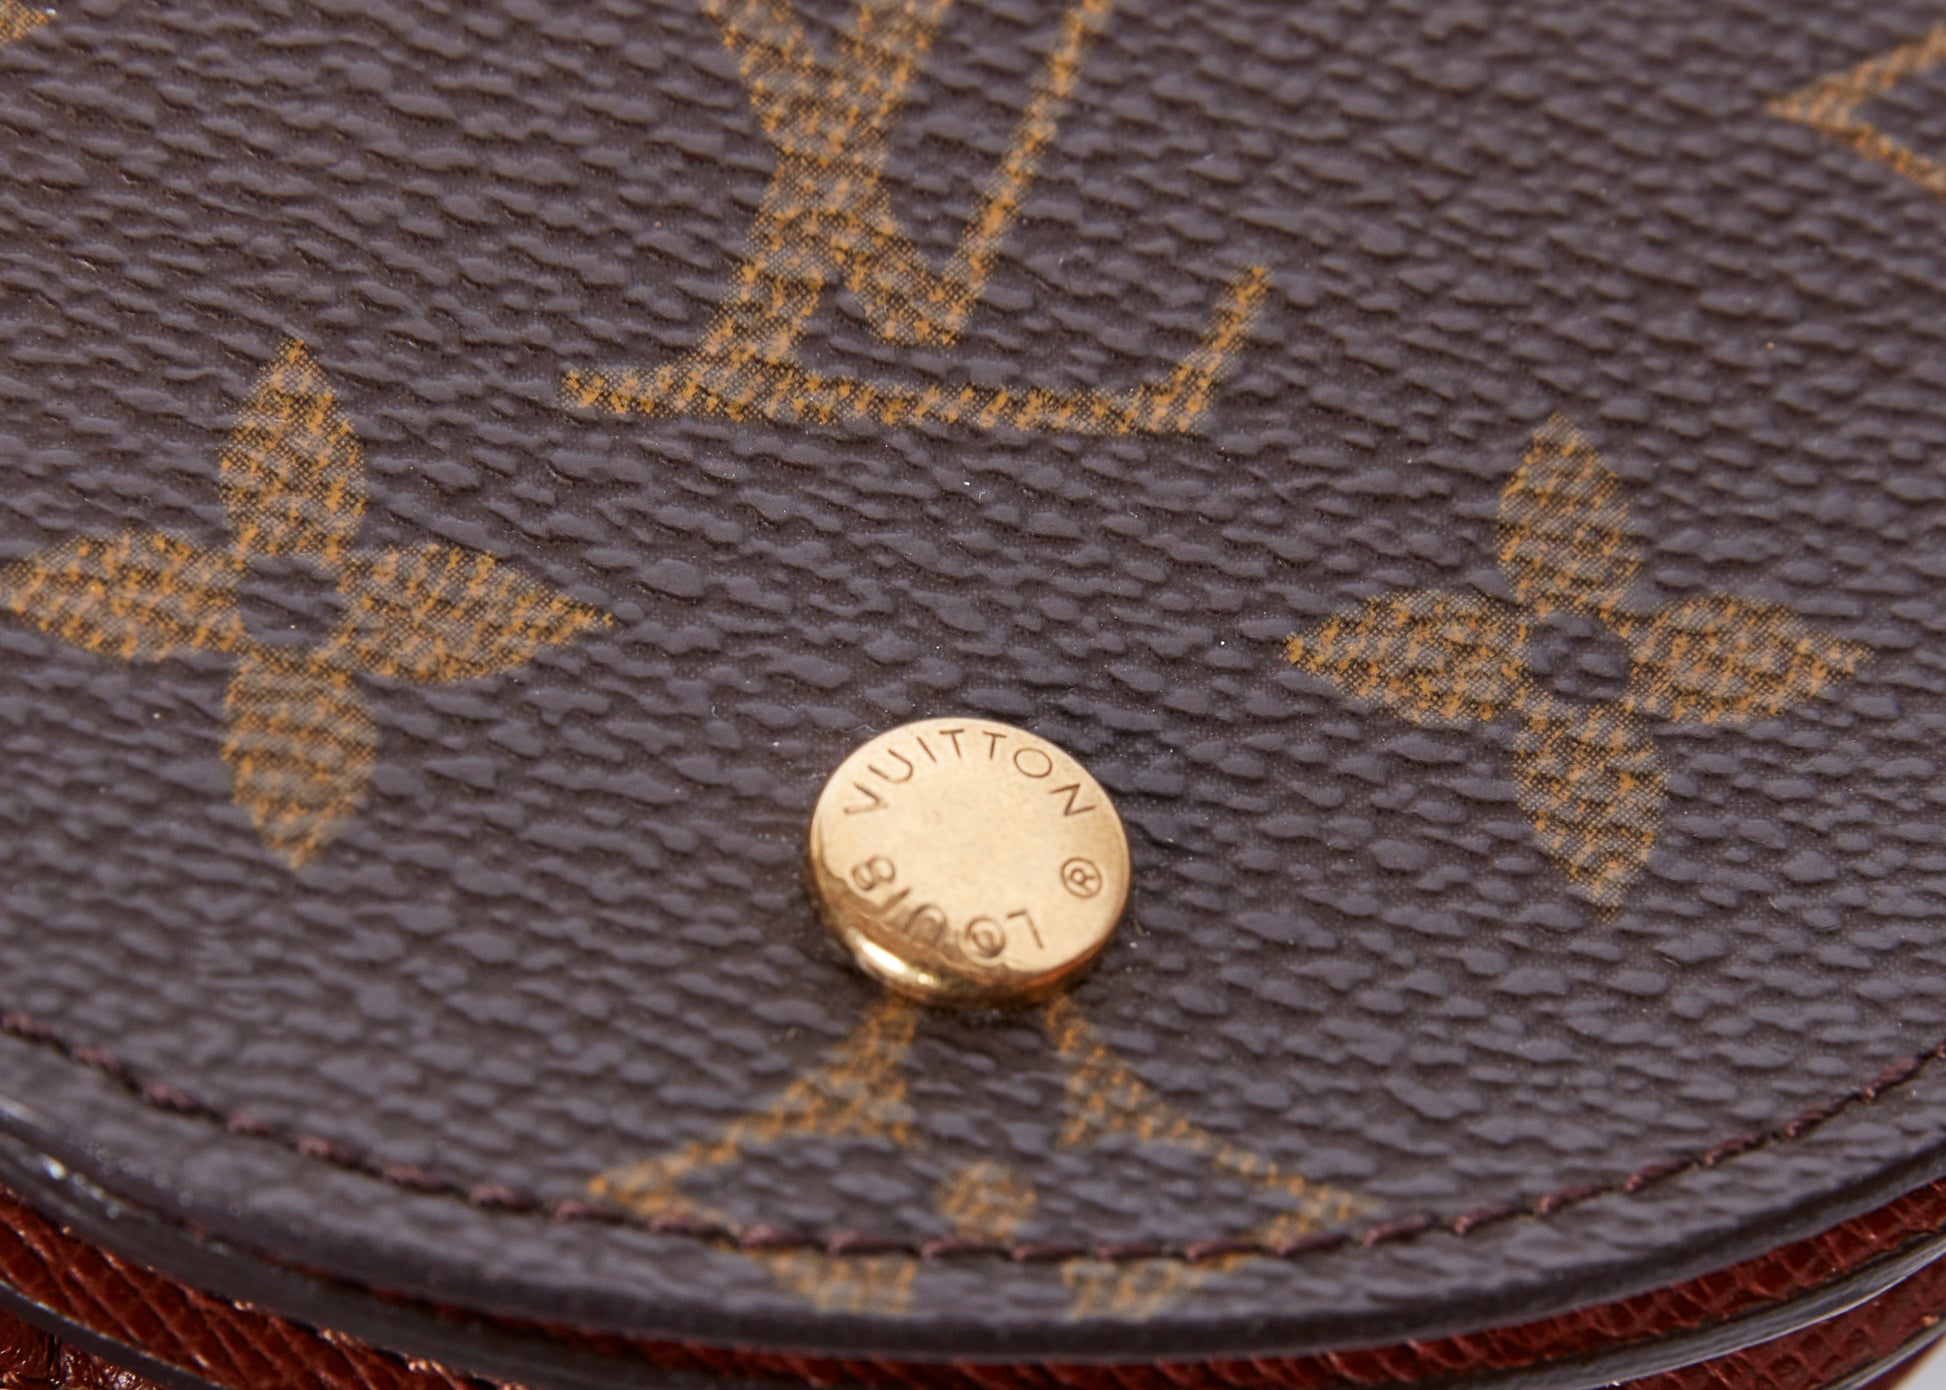 Louis Vuitton Porte Monnaie Gousset Coin Purse Wallet – Mills